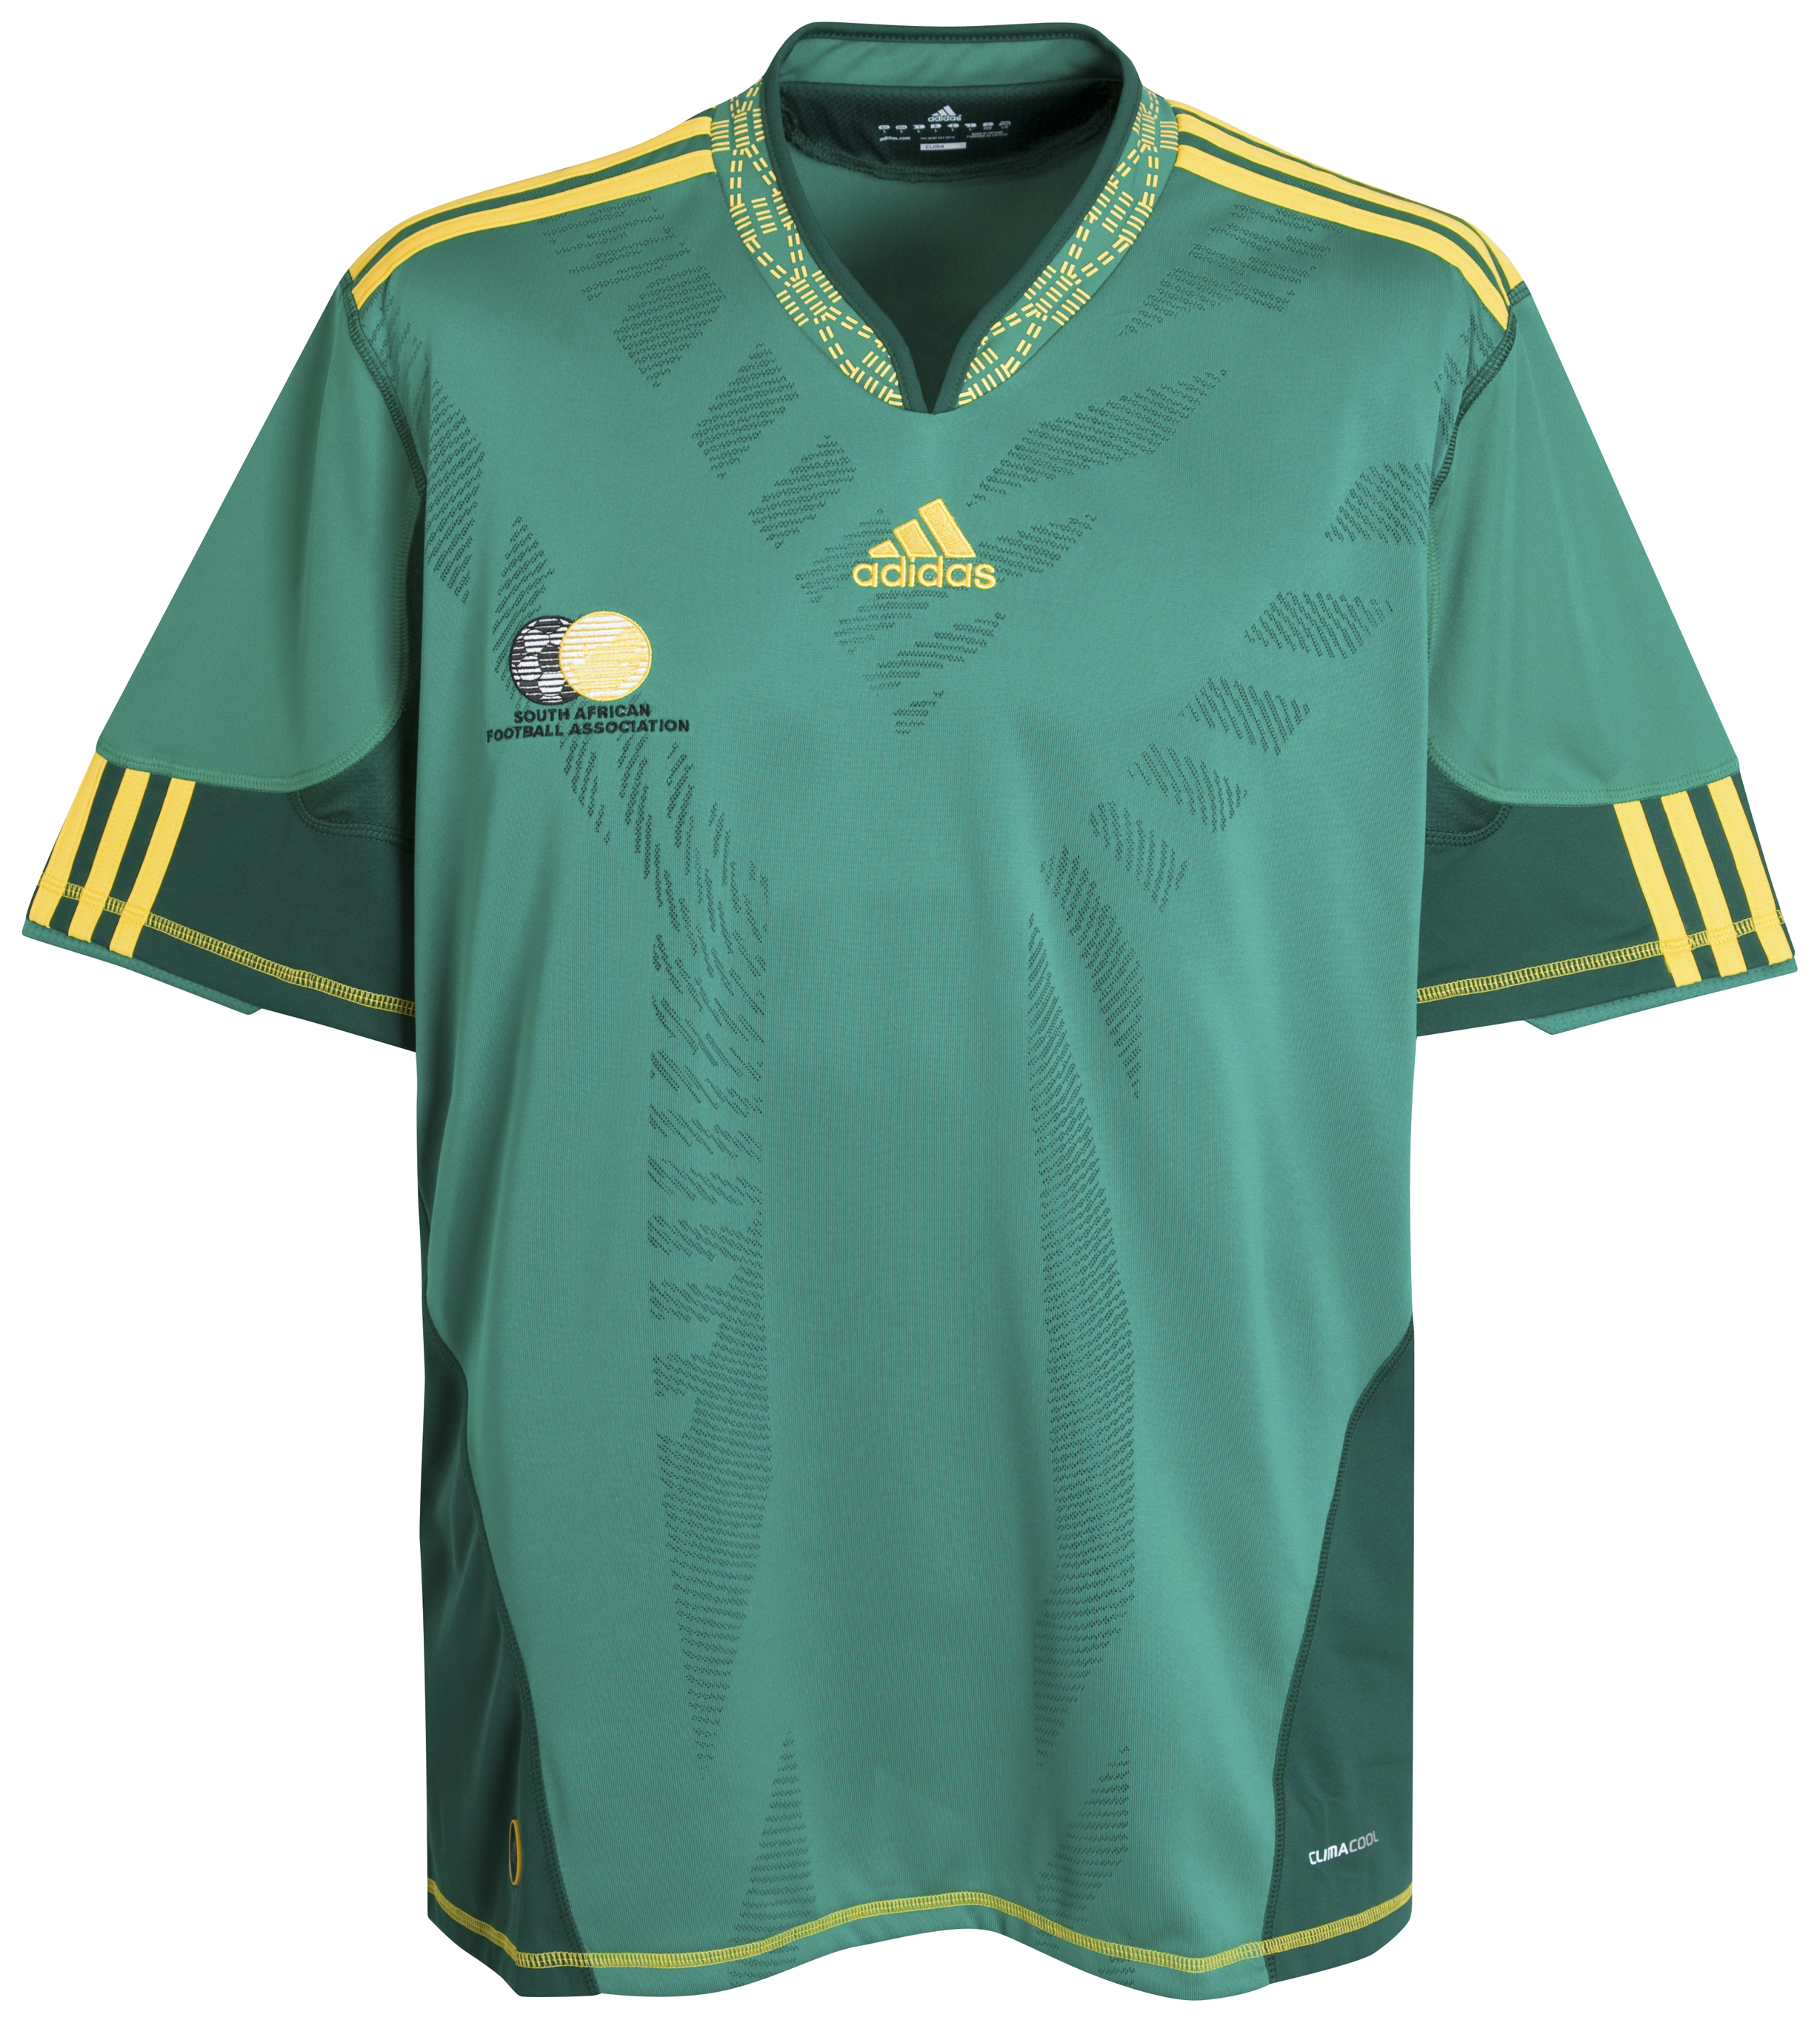 ملابس المنتخبات لكأس العالم2010م Kb-66945